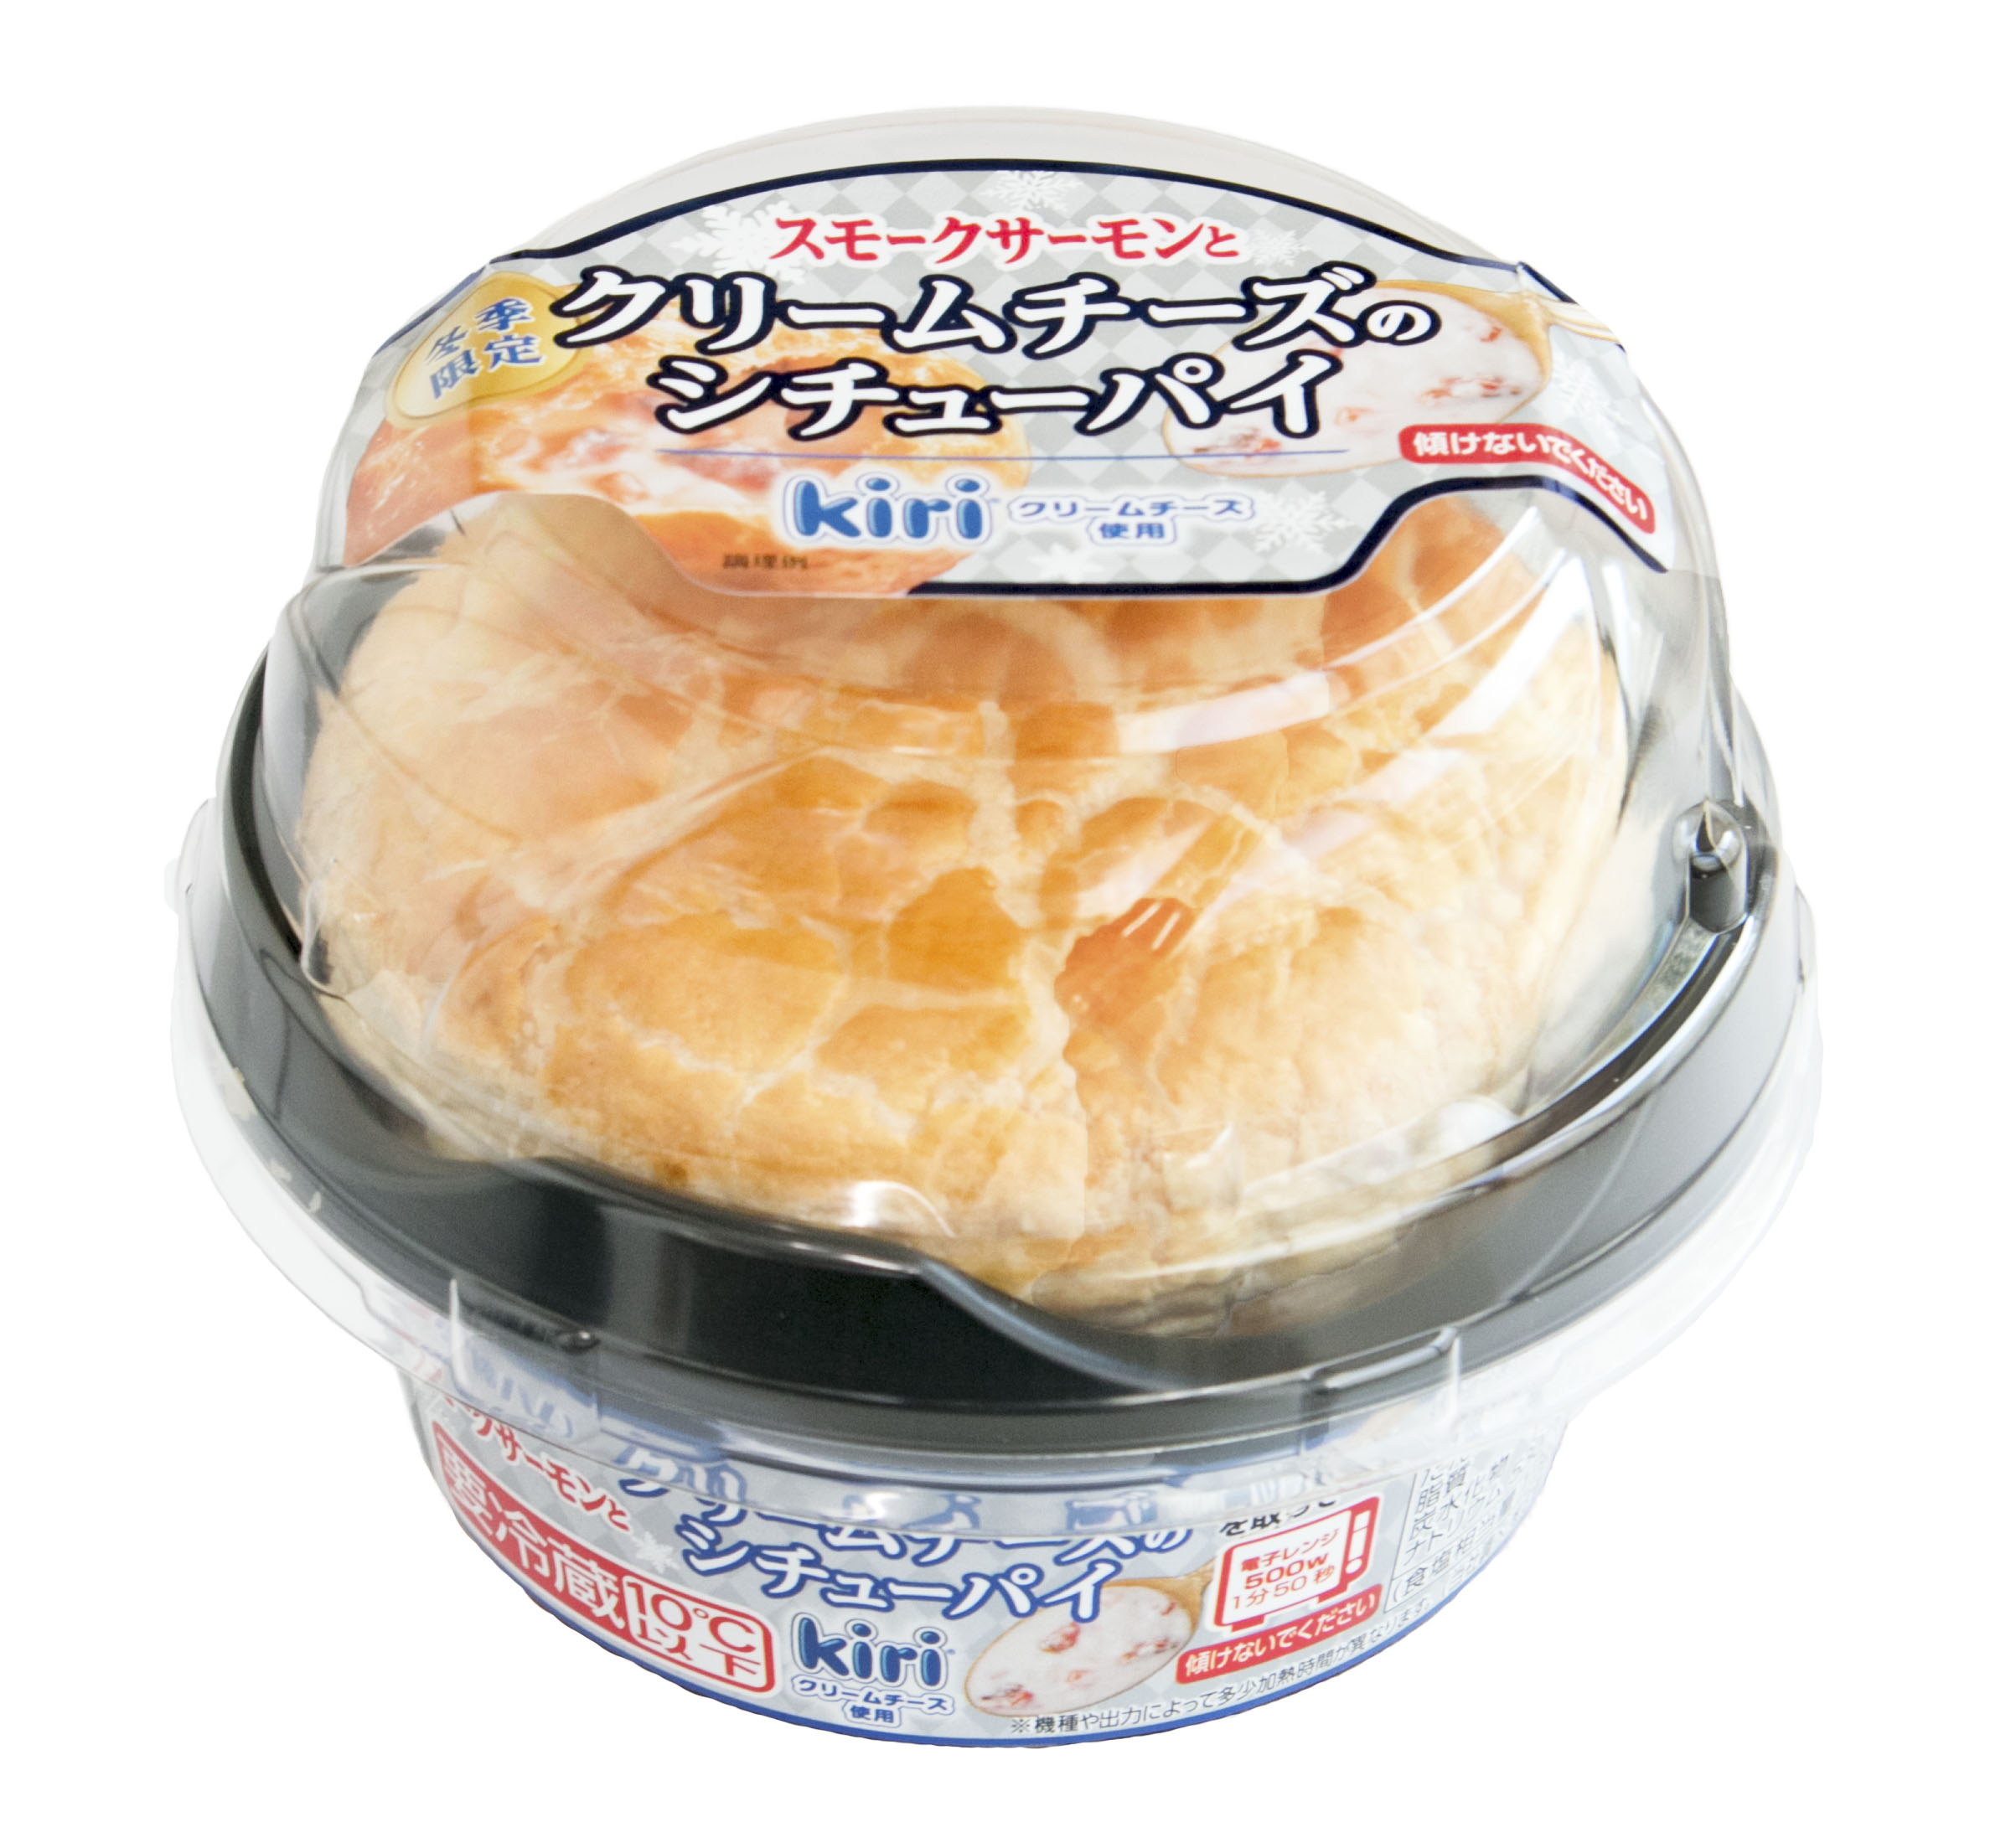 Kiri クリームチーズ入り スモークサーモンとクリームチーズのシチューパイ を新発売 伊藤ハム米久hdのプレスリリース